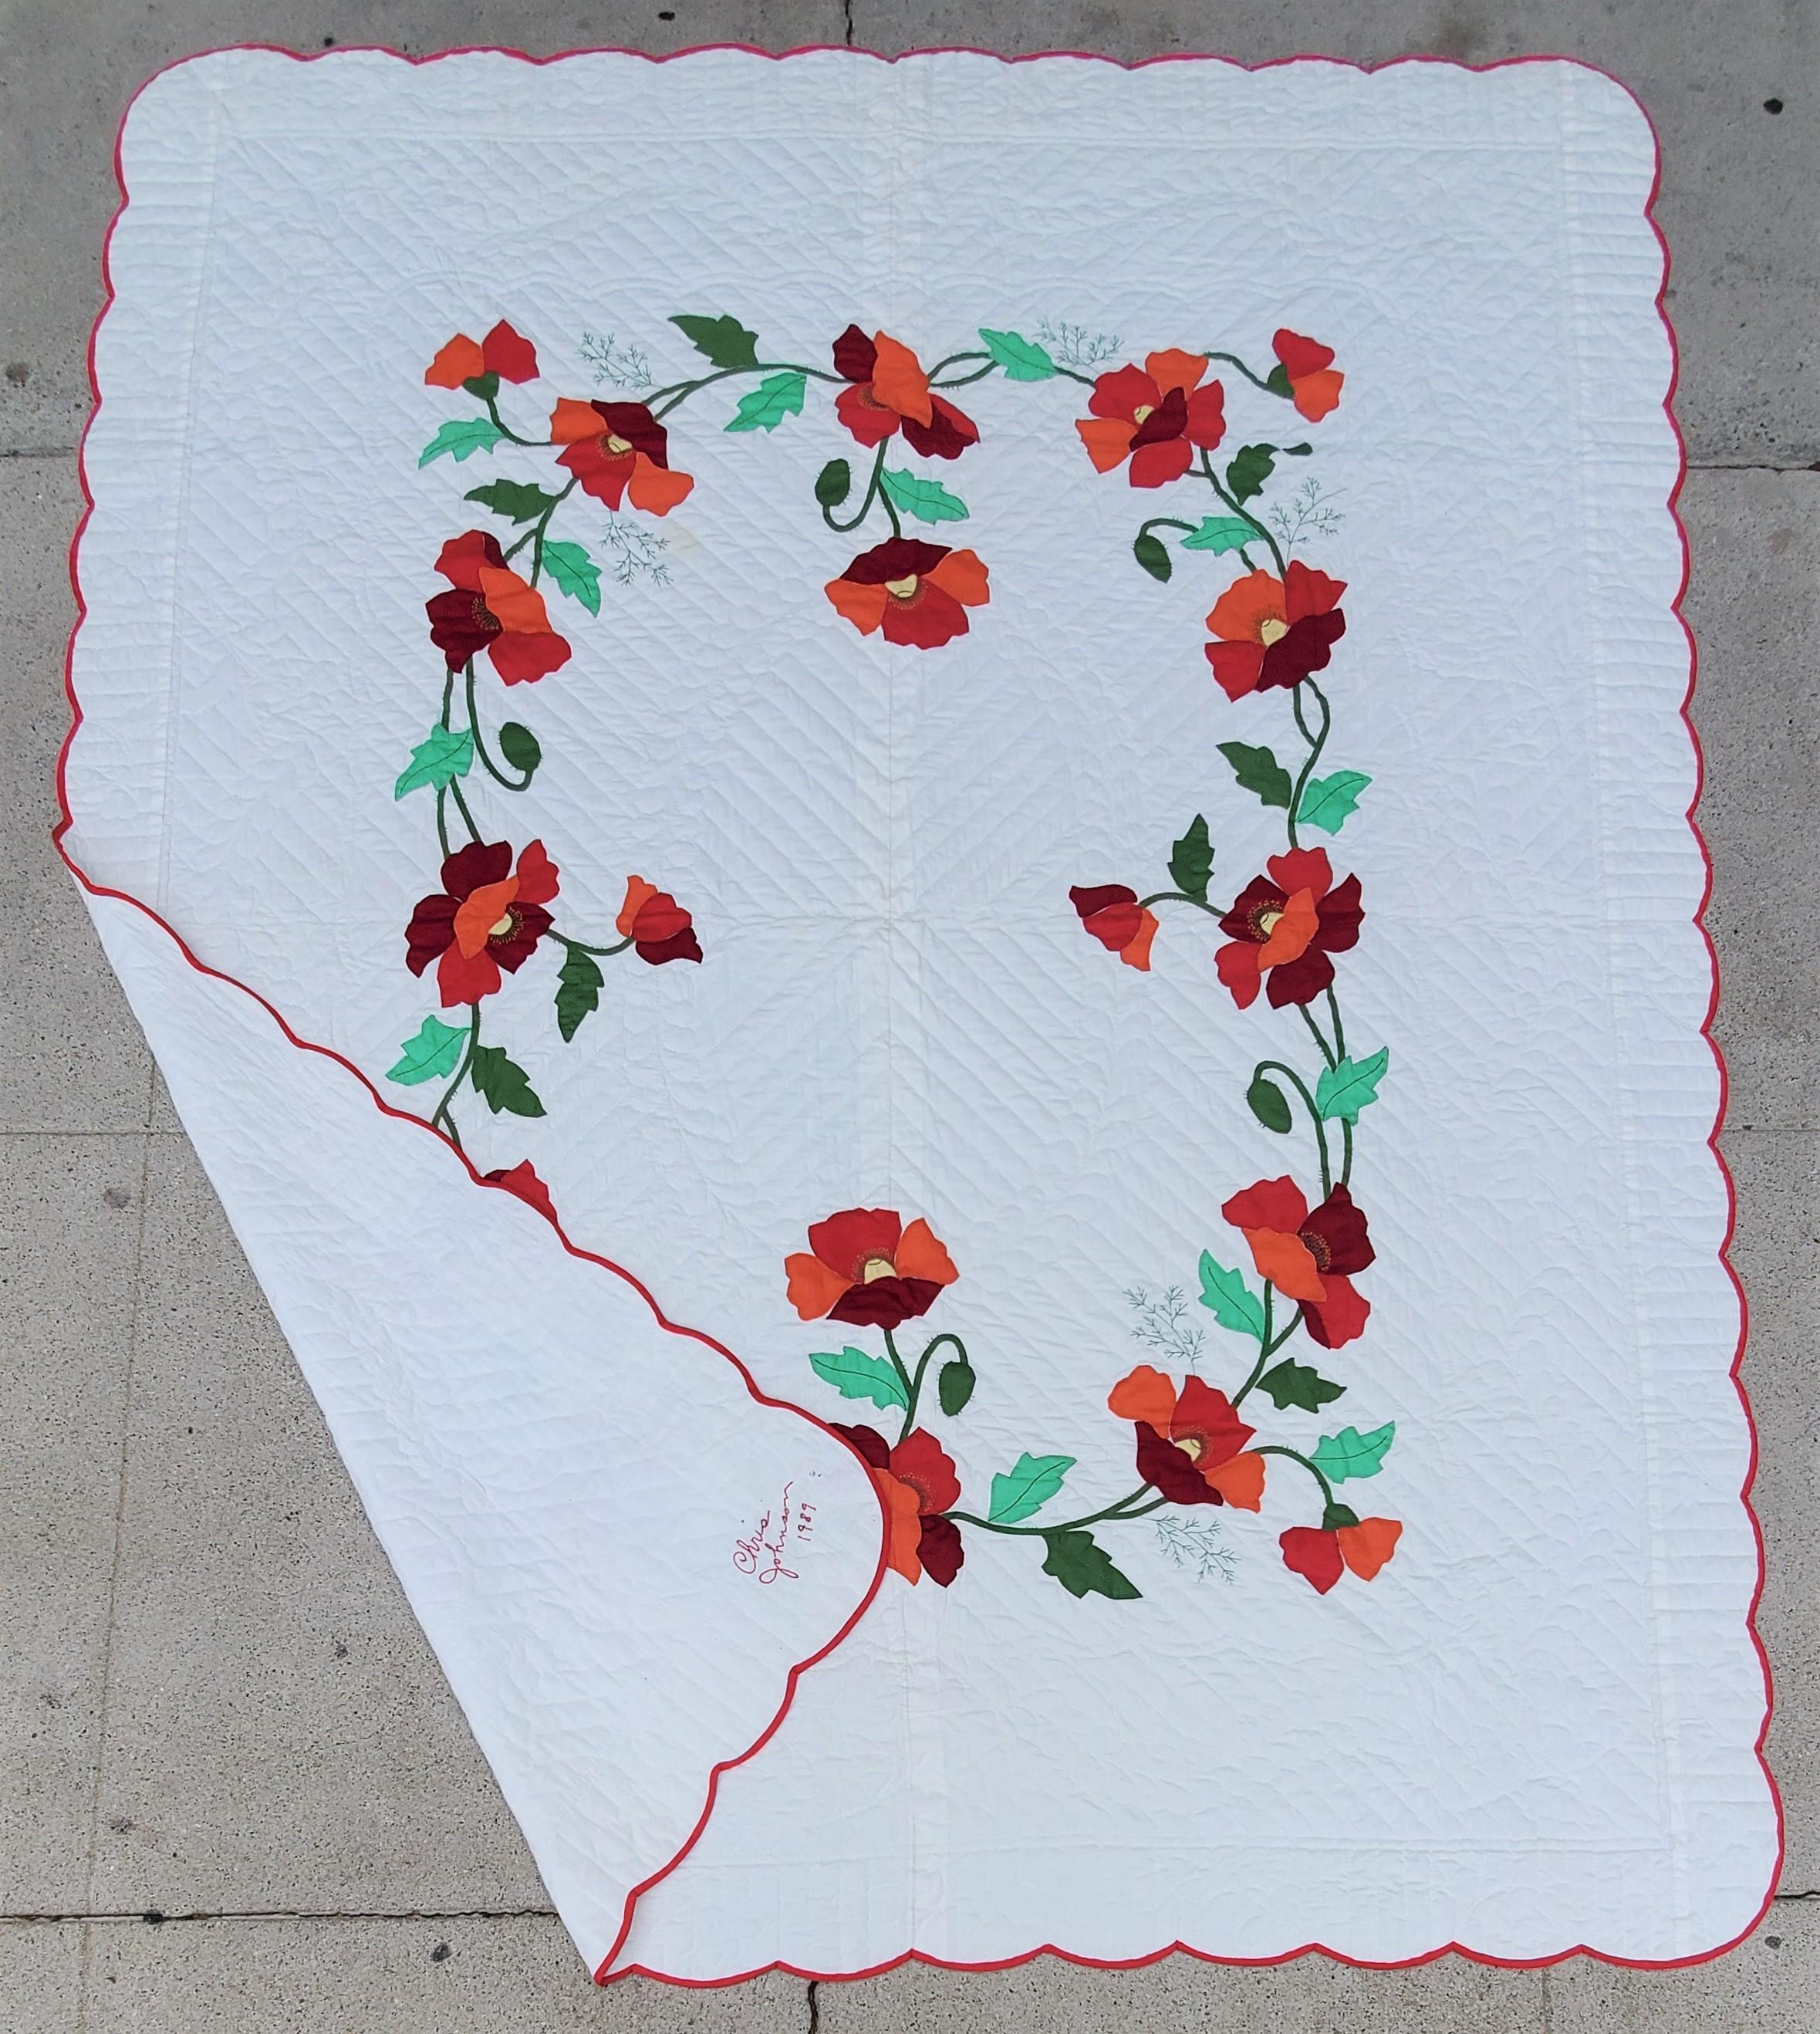 Signiert und datiert 1989 von Chris Johnson. Rosen-Applikationsquilt mit rotem Rand. Der Quilt hat ein Blumen- und ein Herzmuster, die auf den Bildern zu sehen sind. Toller Appliqué-Quilt für jede Sammlung.